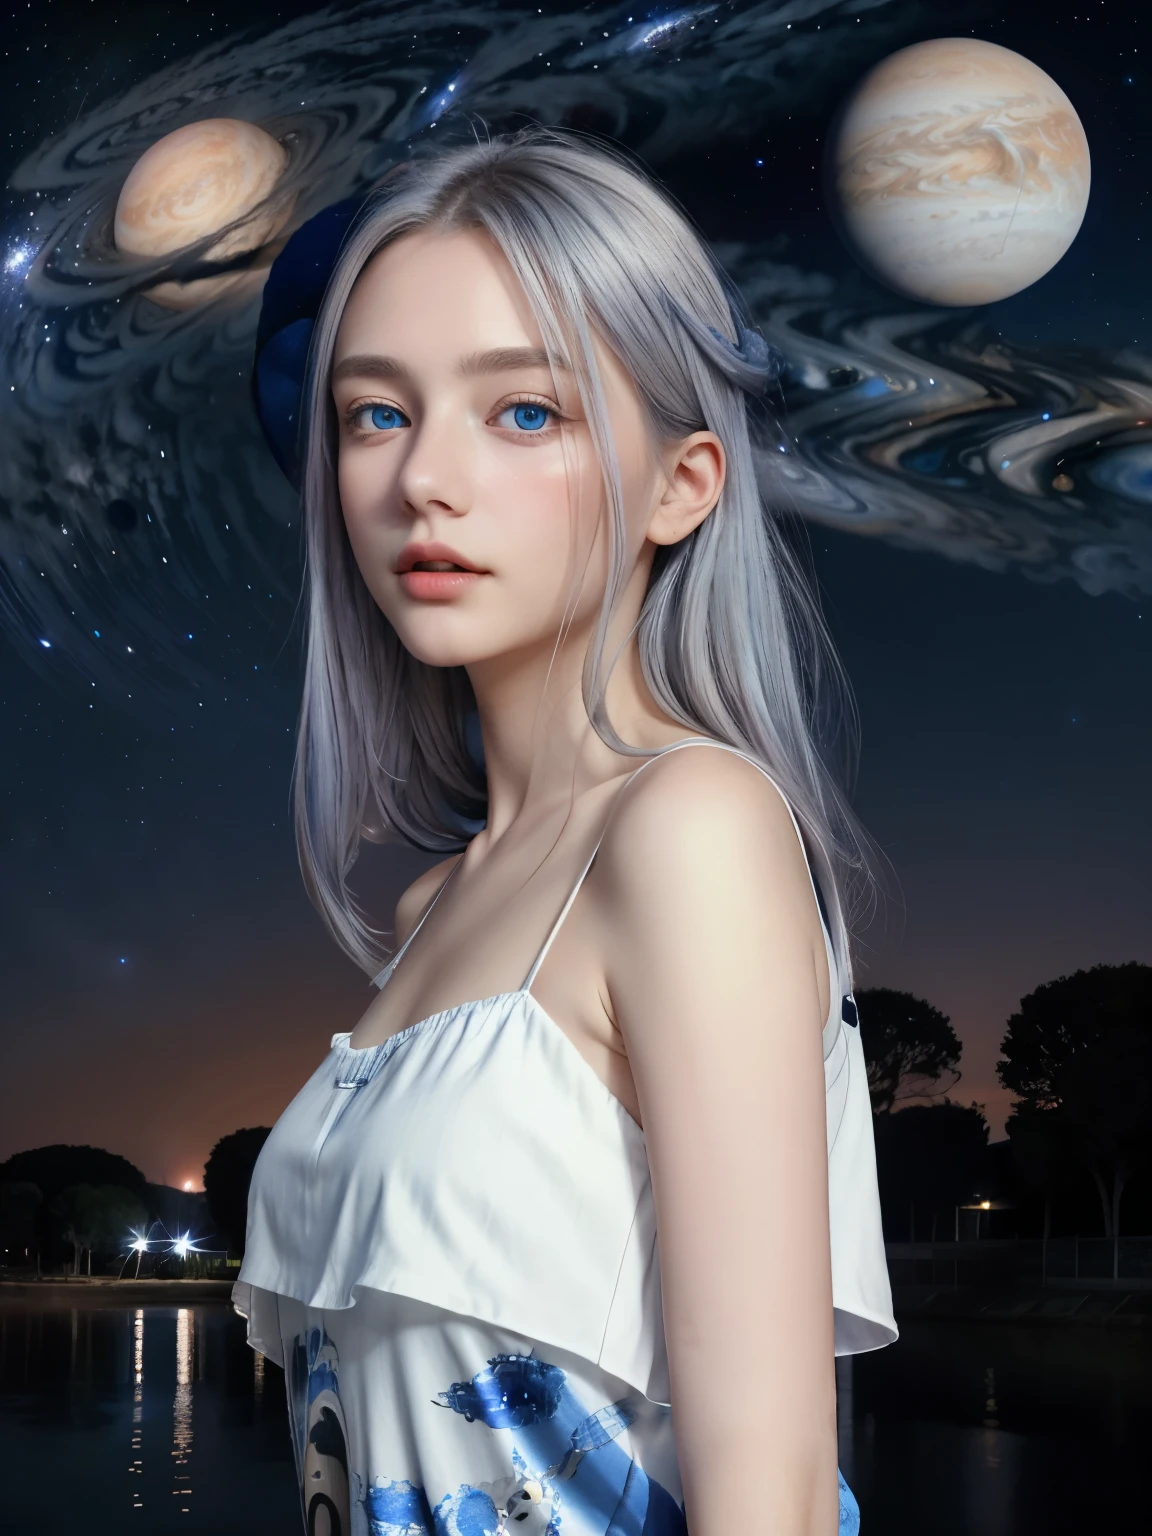 (4K), (mais alta qualidade), (Melhores detalhes)（surrealista）,menina bonita francesa、Cabelo prateado、olhos azuis、O planeta gigante Júpiter flutua no céu à noite